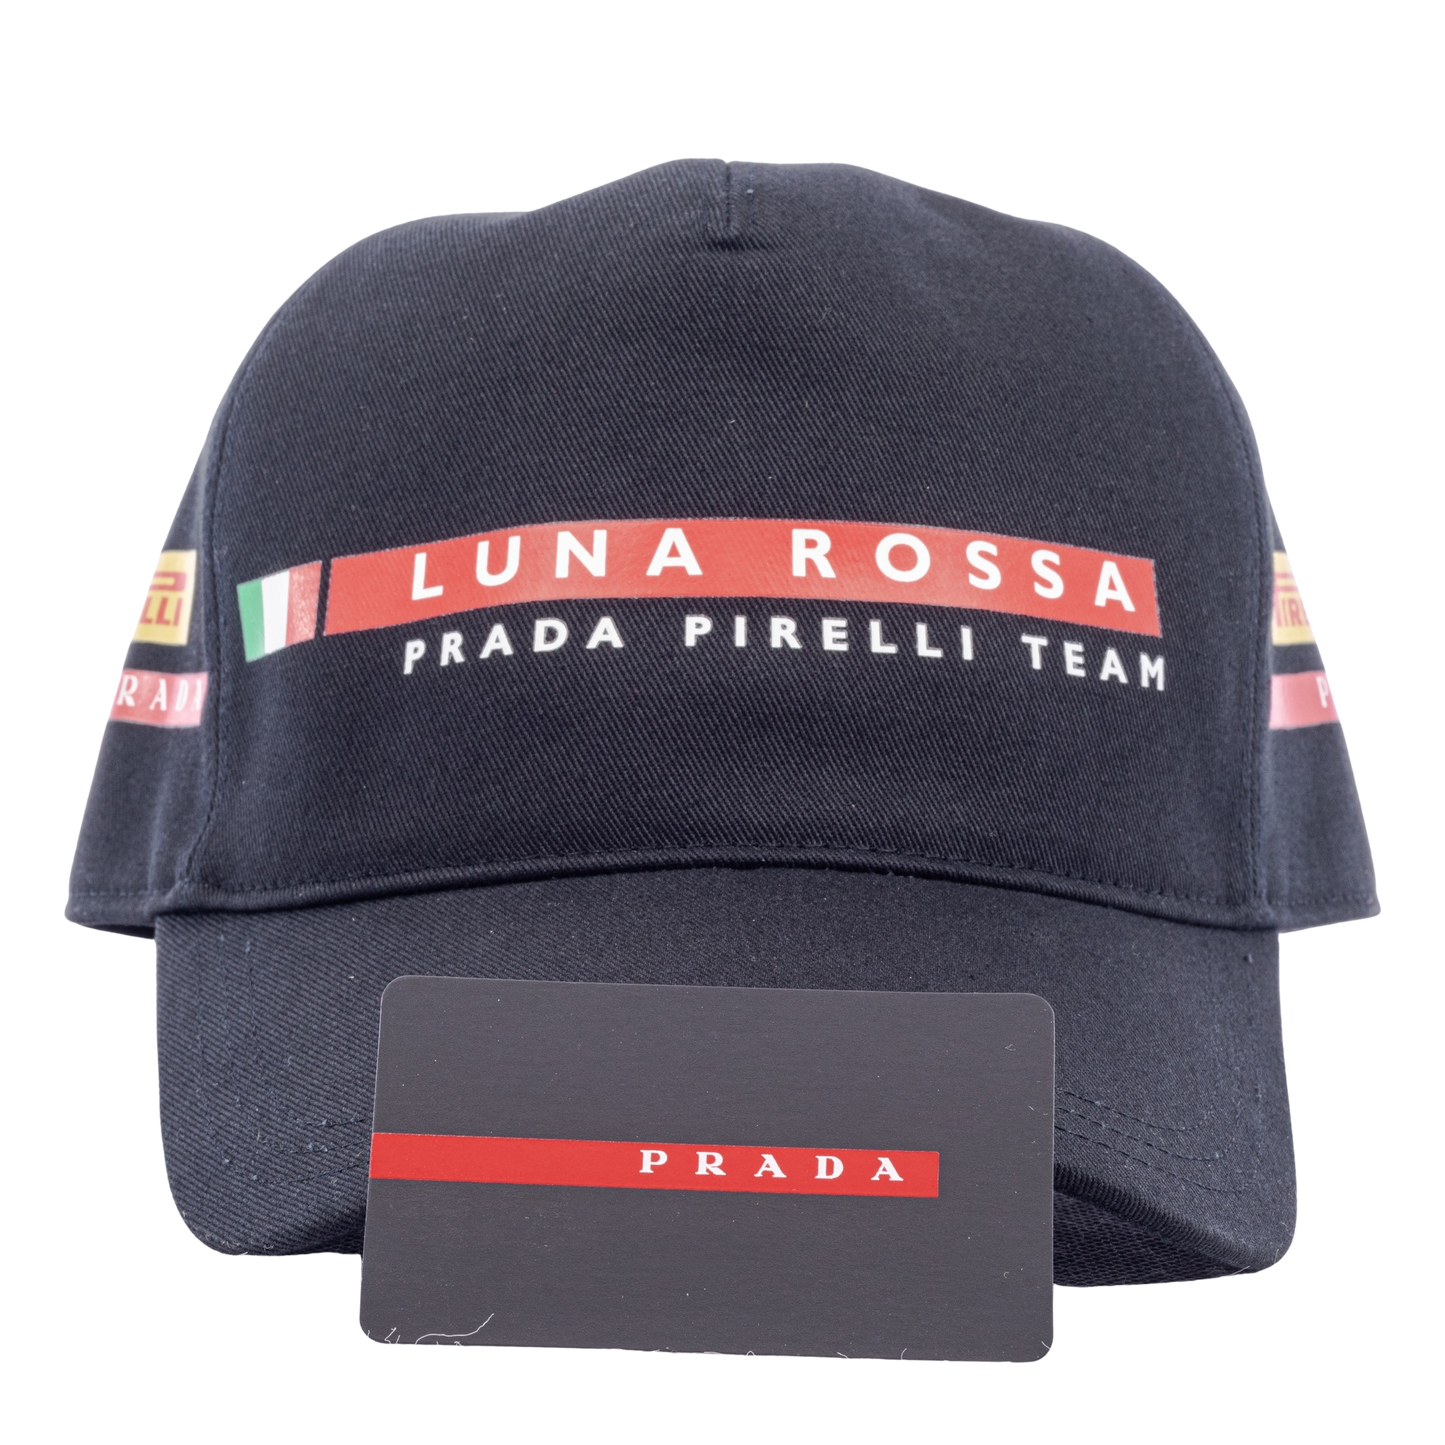 Prada Luna Rossa Pirelli Cap